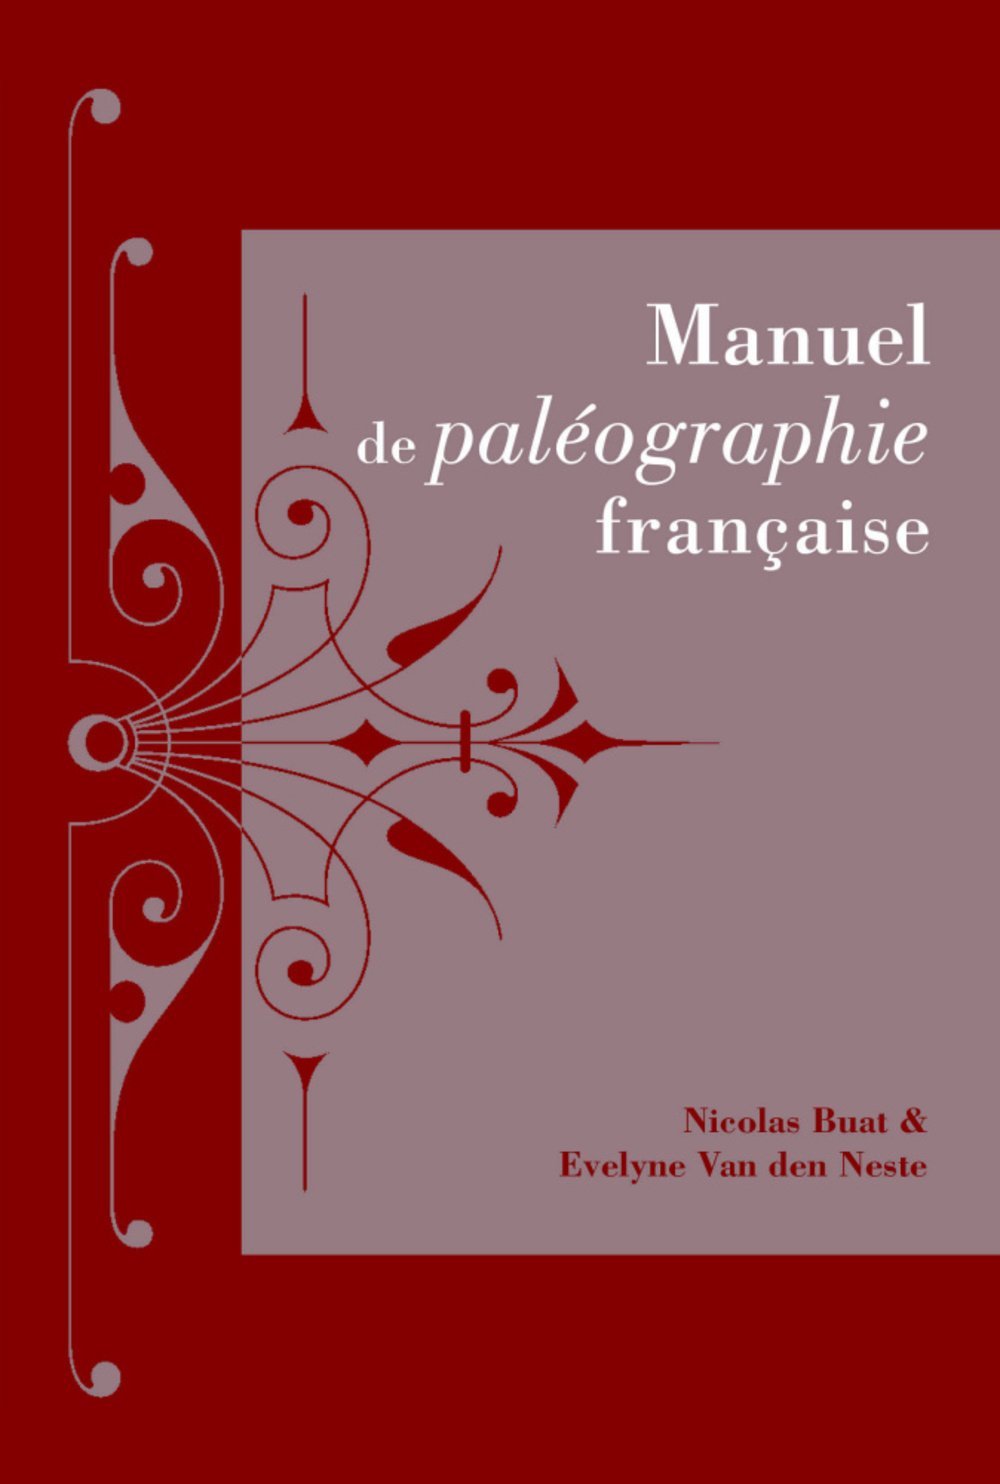 Manuel de paléographie française, 2016, 320 p.